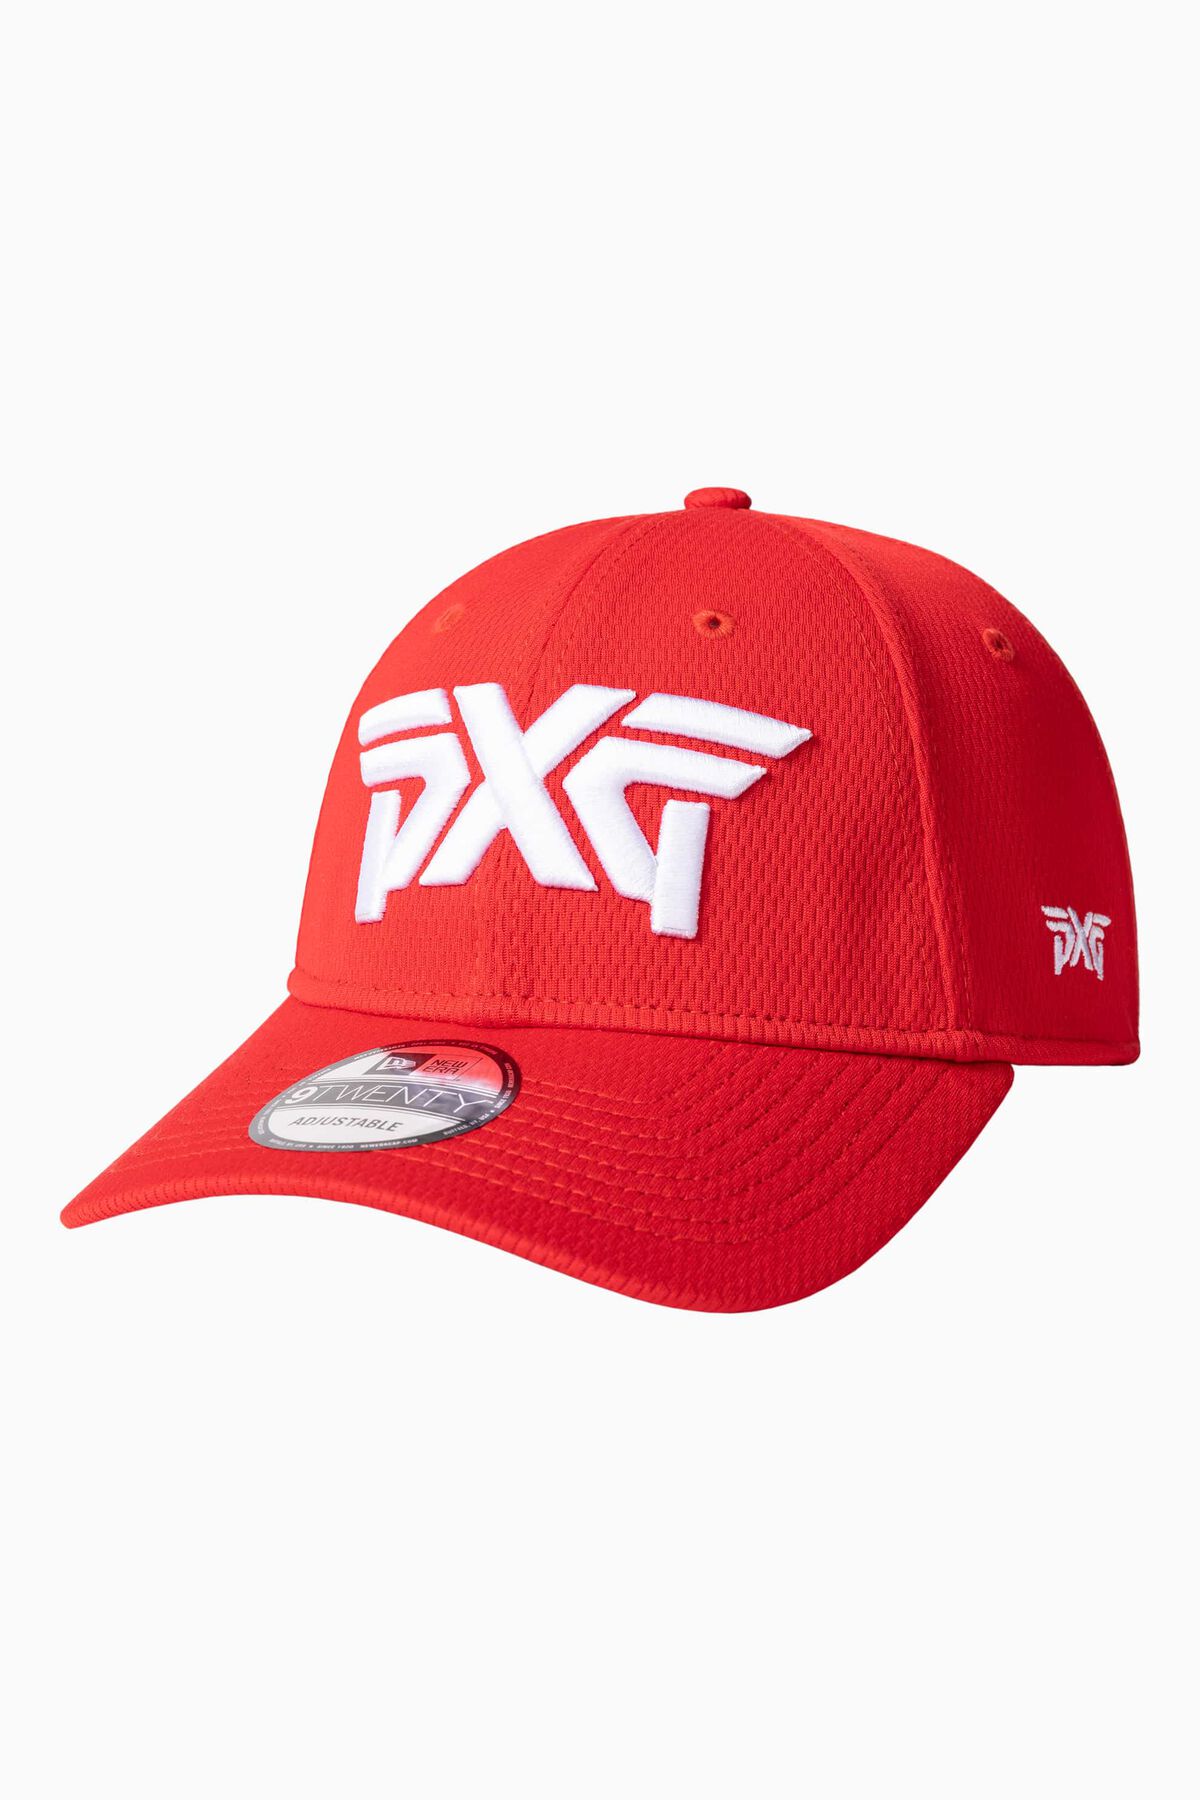 PXG Houston Red 9TWENTY Adjustable Cap 